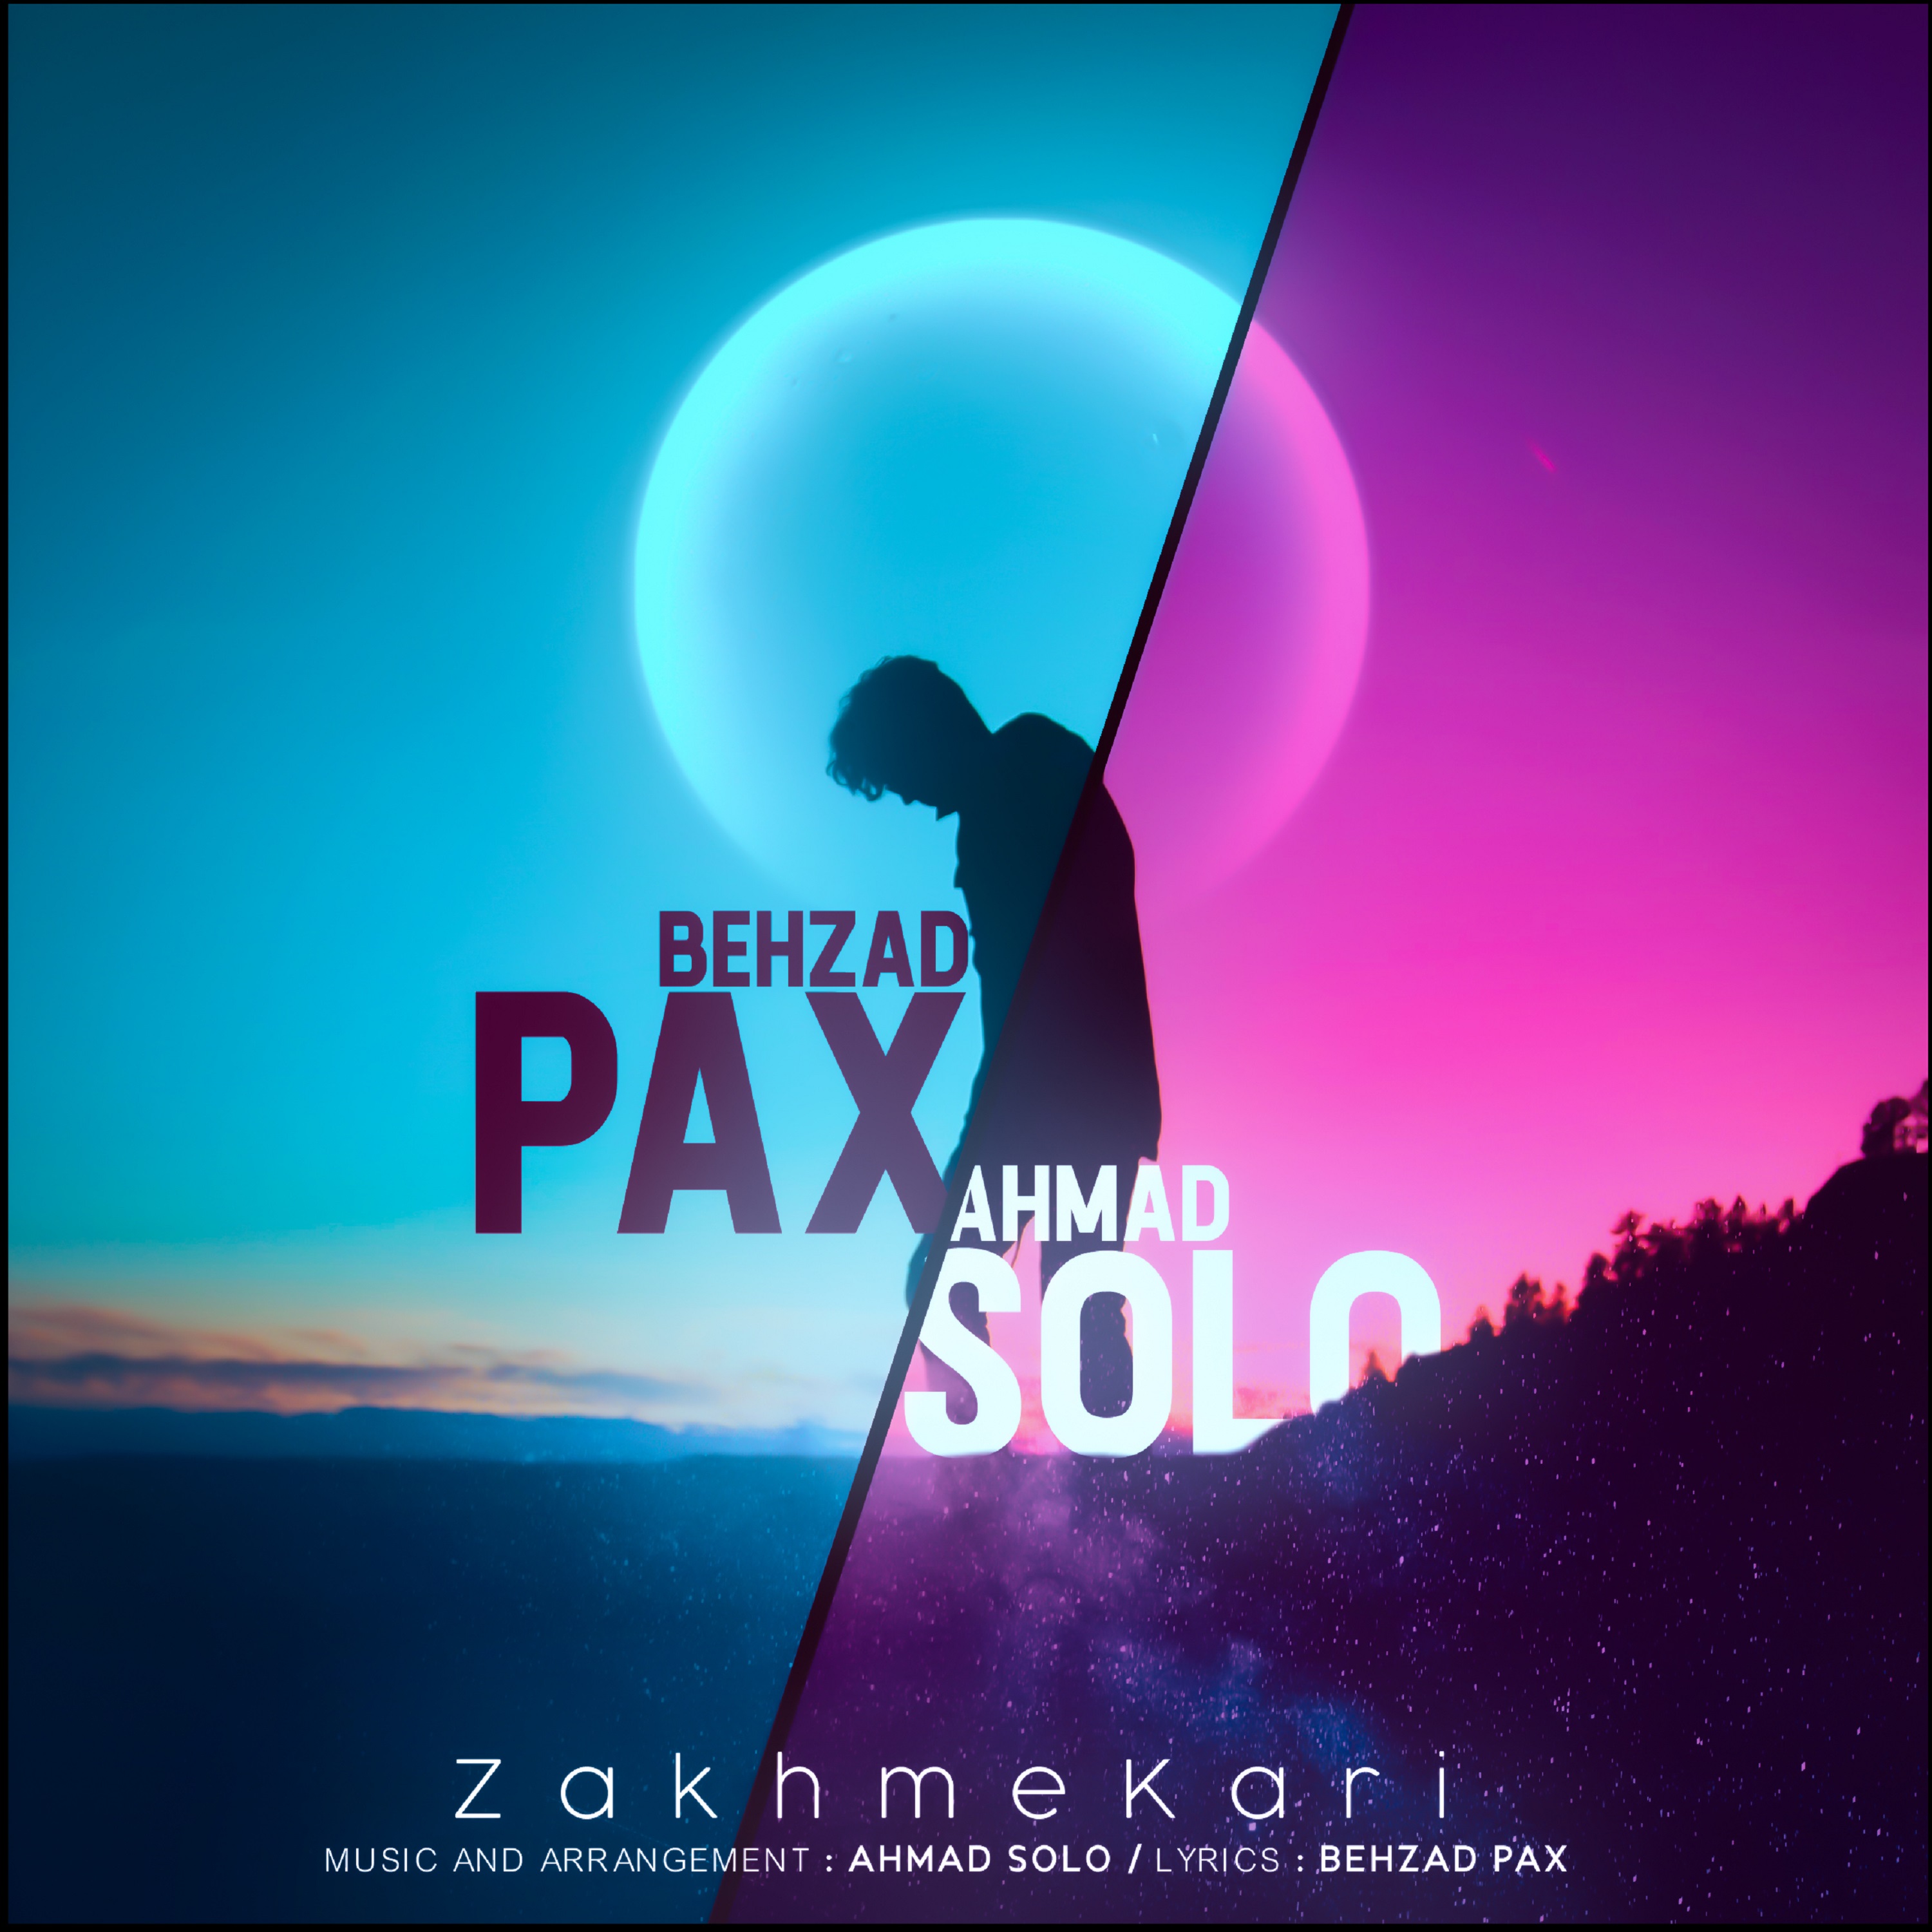  دانلود آهنگ جدید بهزاد پکس و احمد سلو - امیدوار باش | Download New Music By Behzad Pax & Ahmad Solo - Omidvar Bash